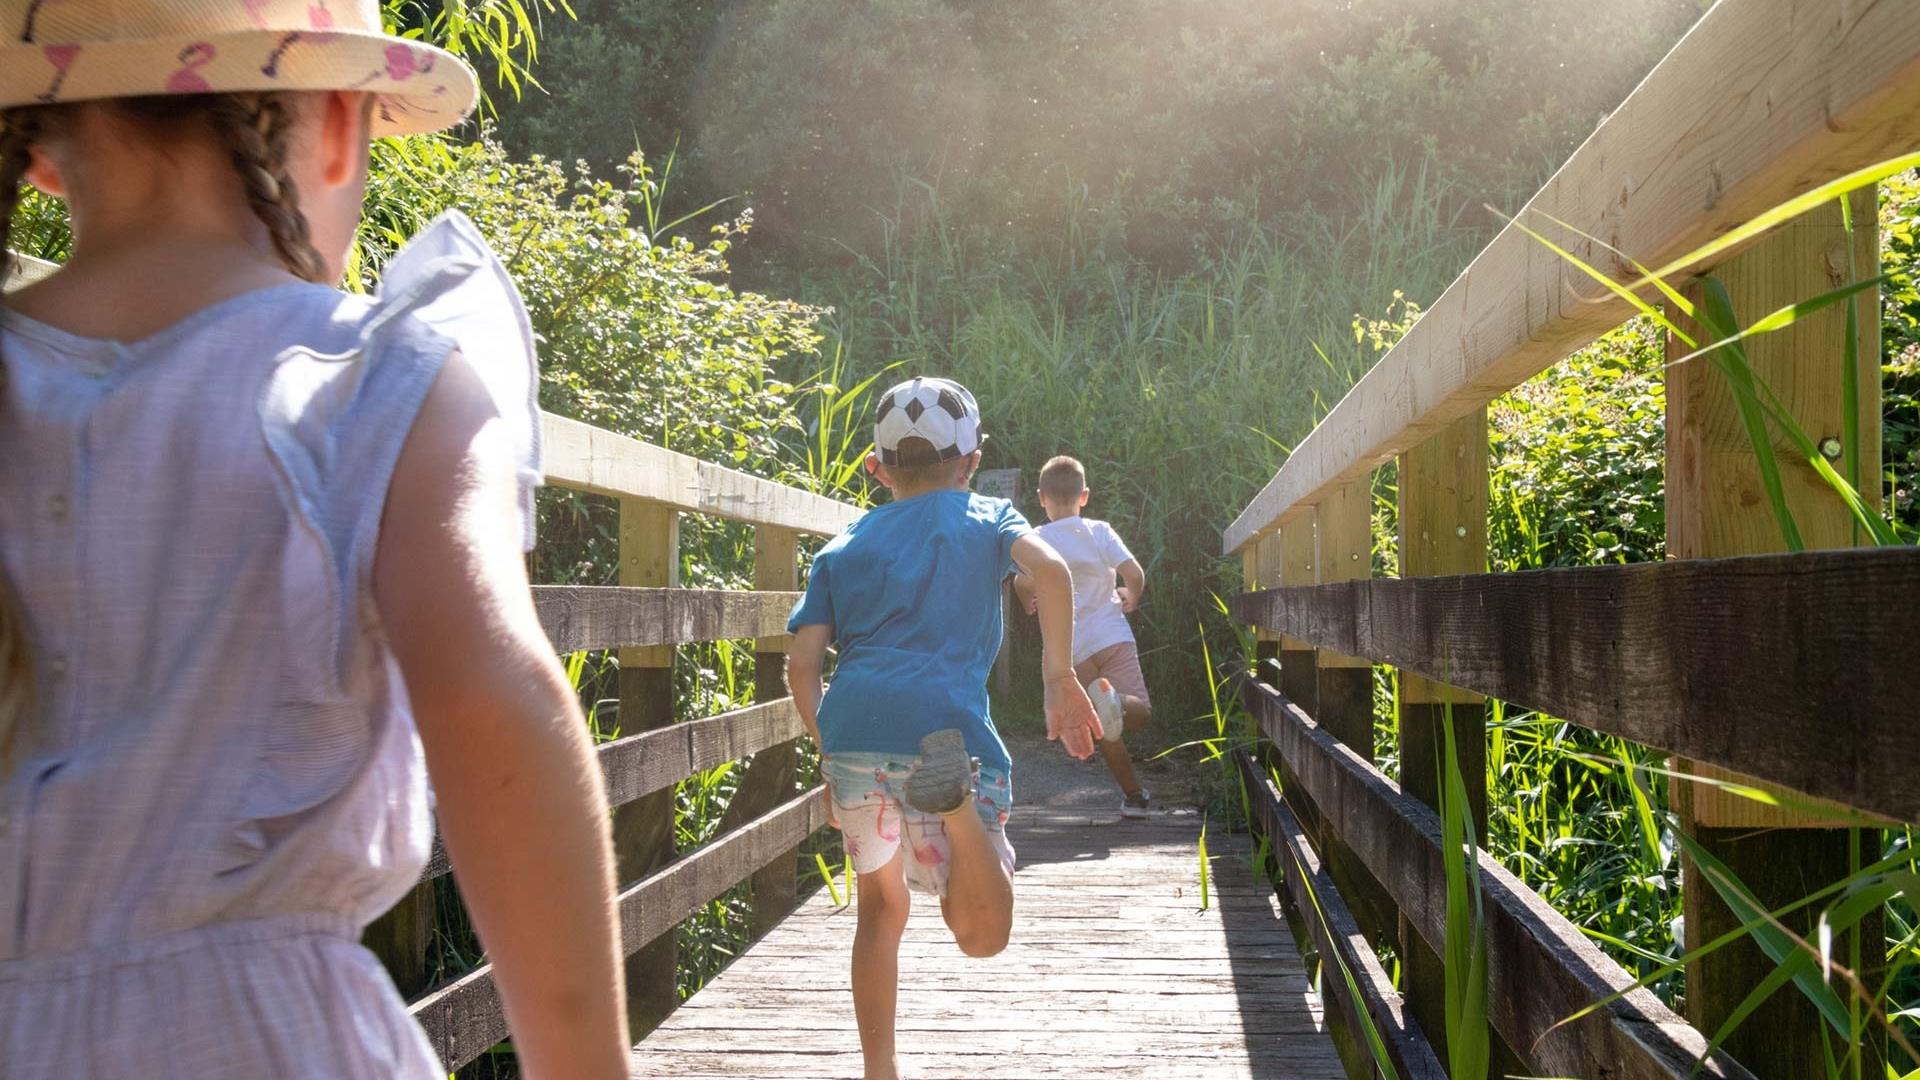 Children running across a bridge in the summer sun at the wetlands.